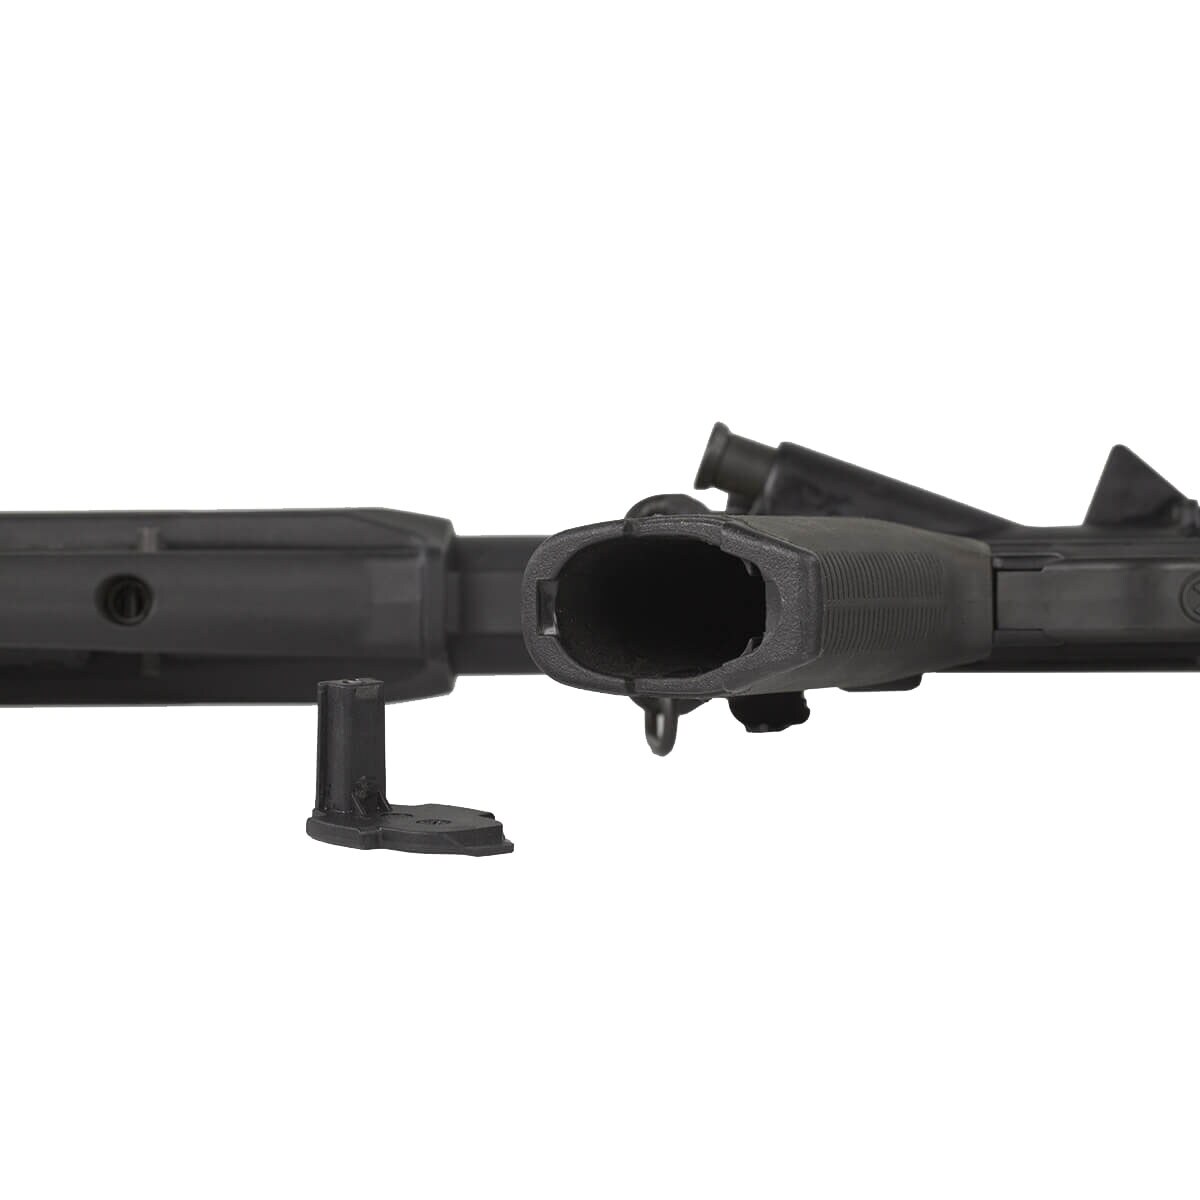 Chwyt pistoletowy Magpul MOE+ Grip do karabinków AR15/M4 - Black